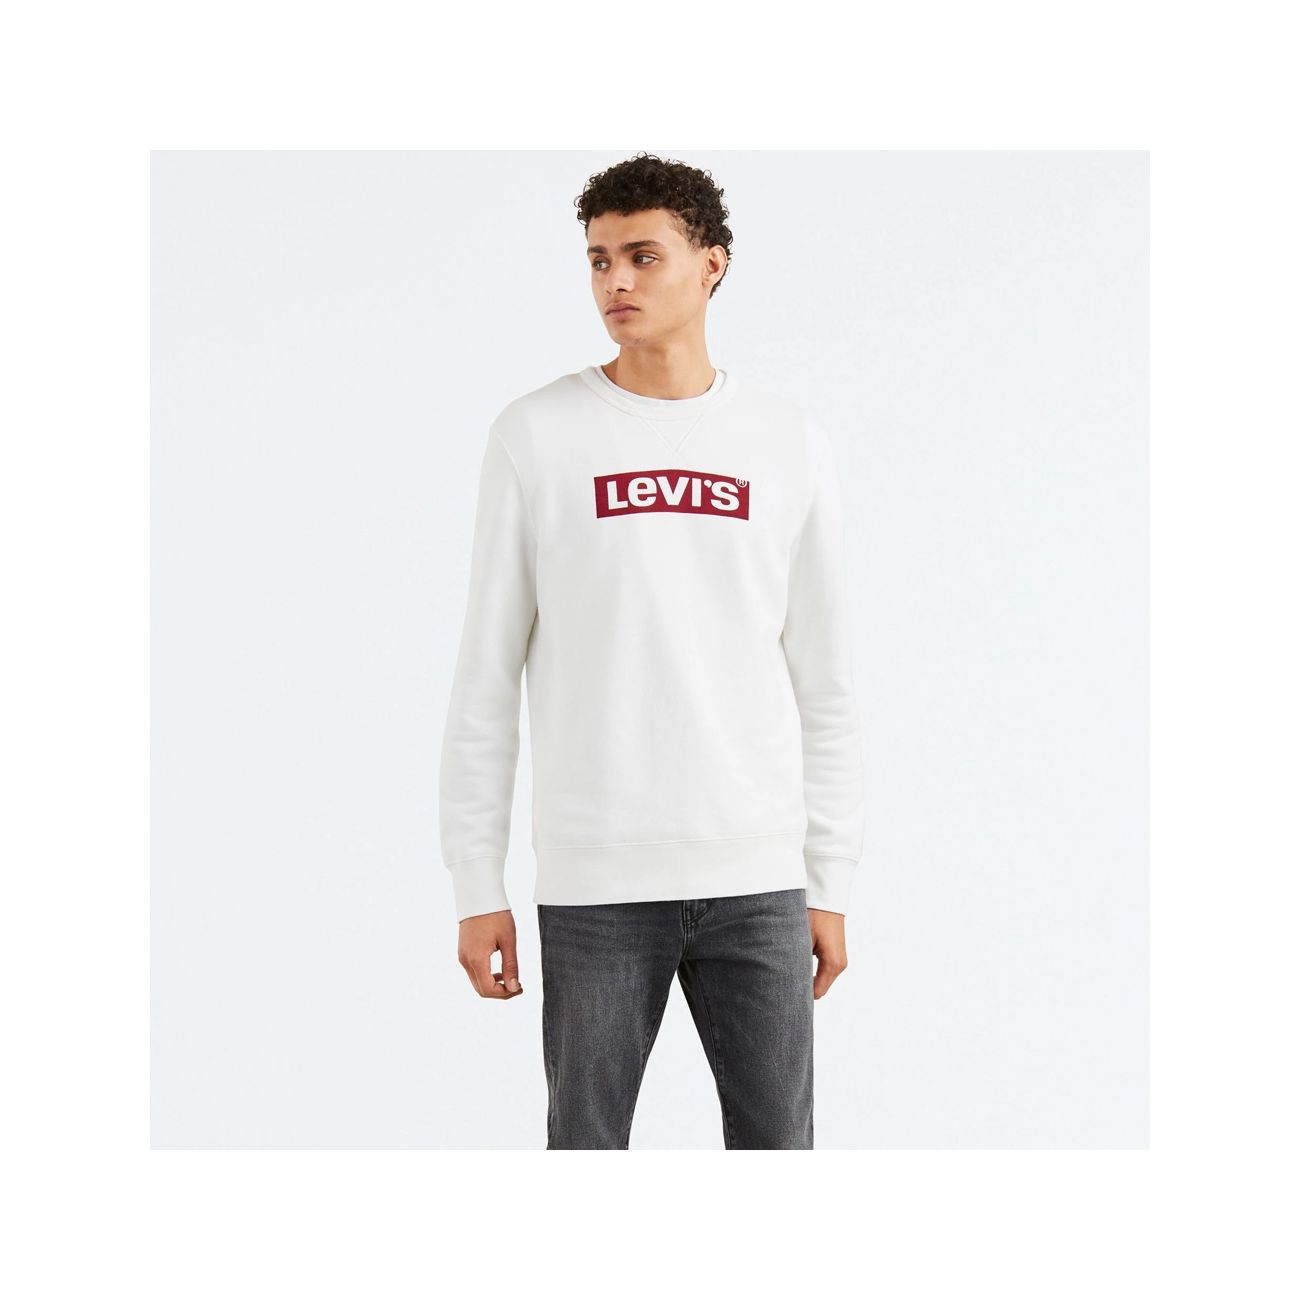 LEVIS GRAPHIC CREW B SWEATSHIRT Man White red | Mascheroni Sportswear